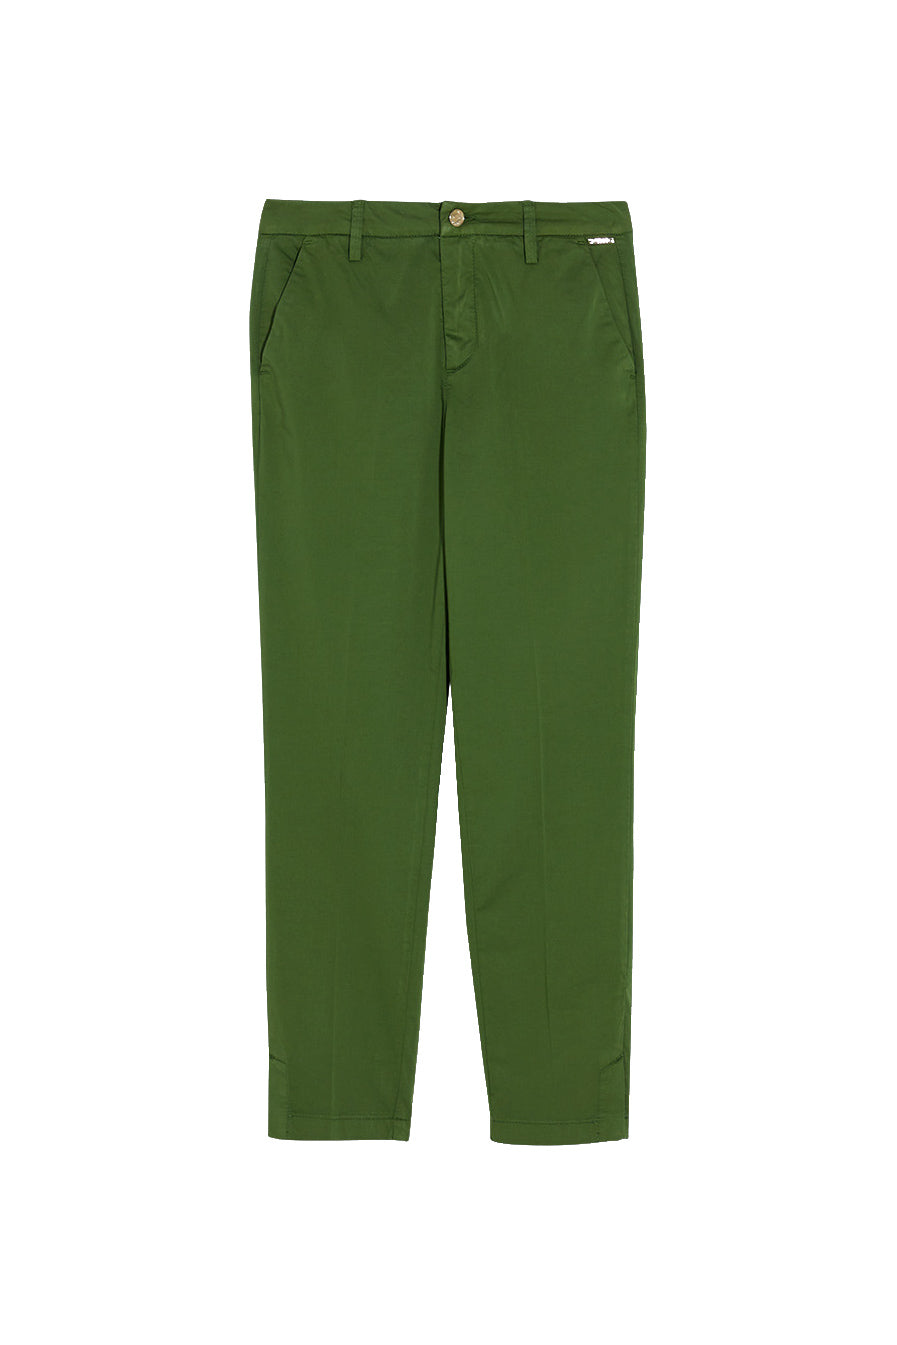 LIU JO Pantalone chino verde con dettagli gioiello - Mancinelli 1954